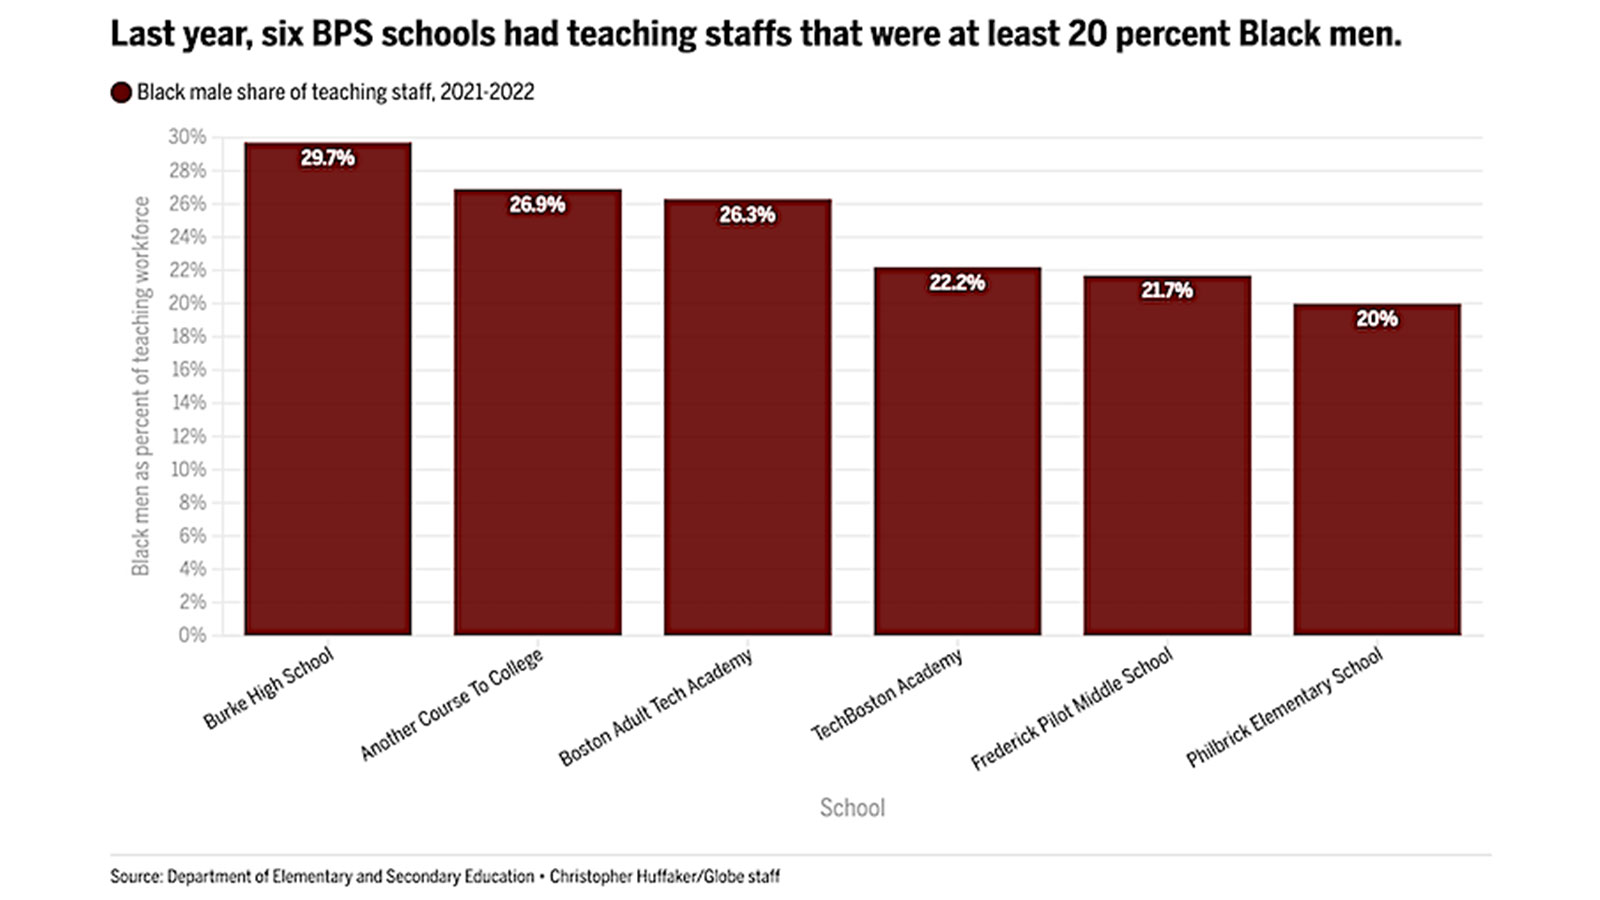 Last year, six BPS schools had teaching staffs that were at least 20 percent Black men.